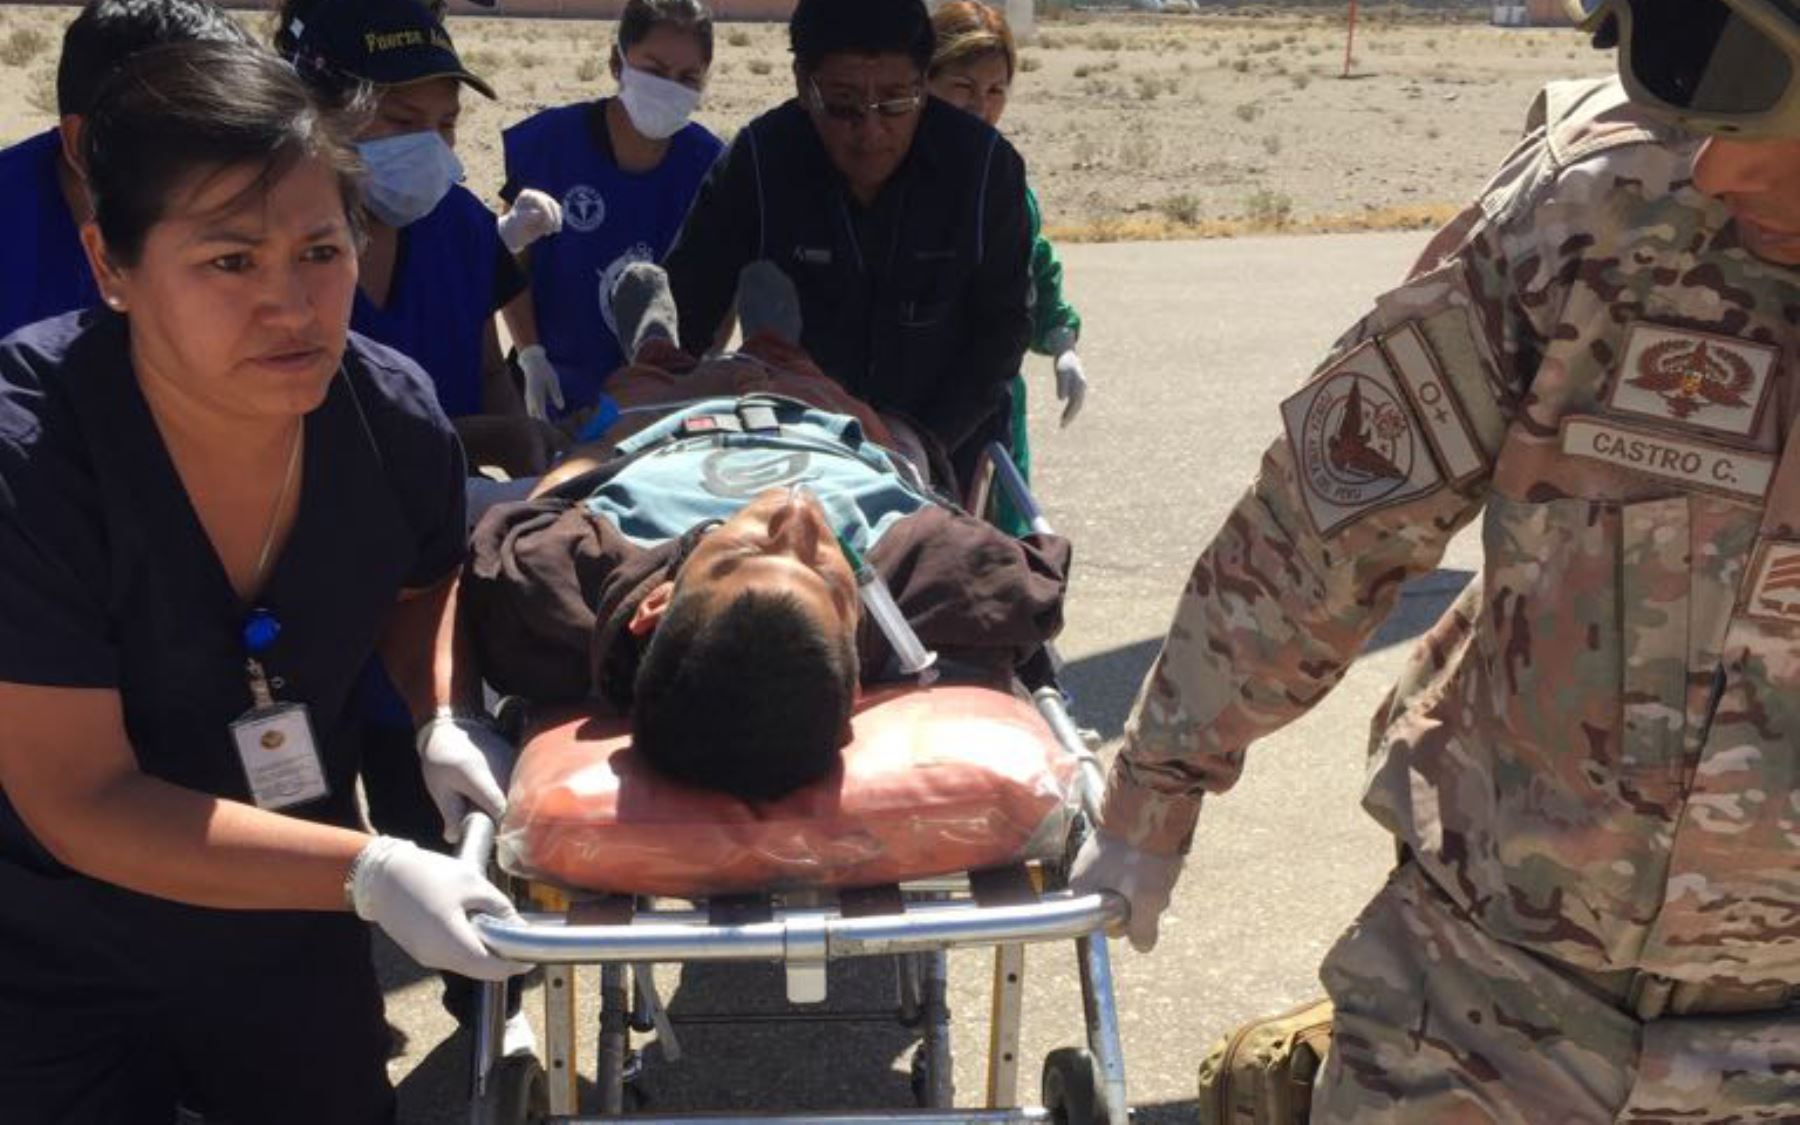 Al Hospital Regional Honorio Delgado de Arequipa ingresaron cinco de los ocho intoxicados en estado grave que fueron trasladados desde Ayacucho para recibir la atención médica especializada que permita salvarles la vida. ANDINA/Difusión